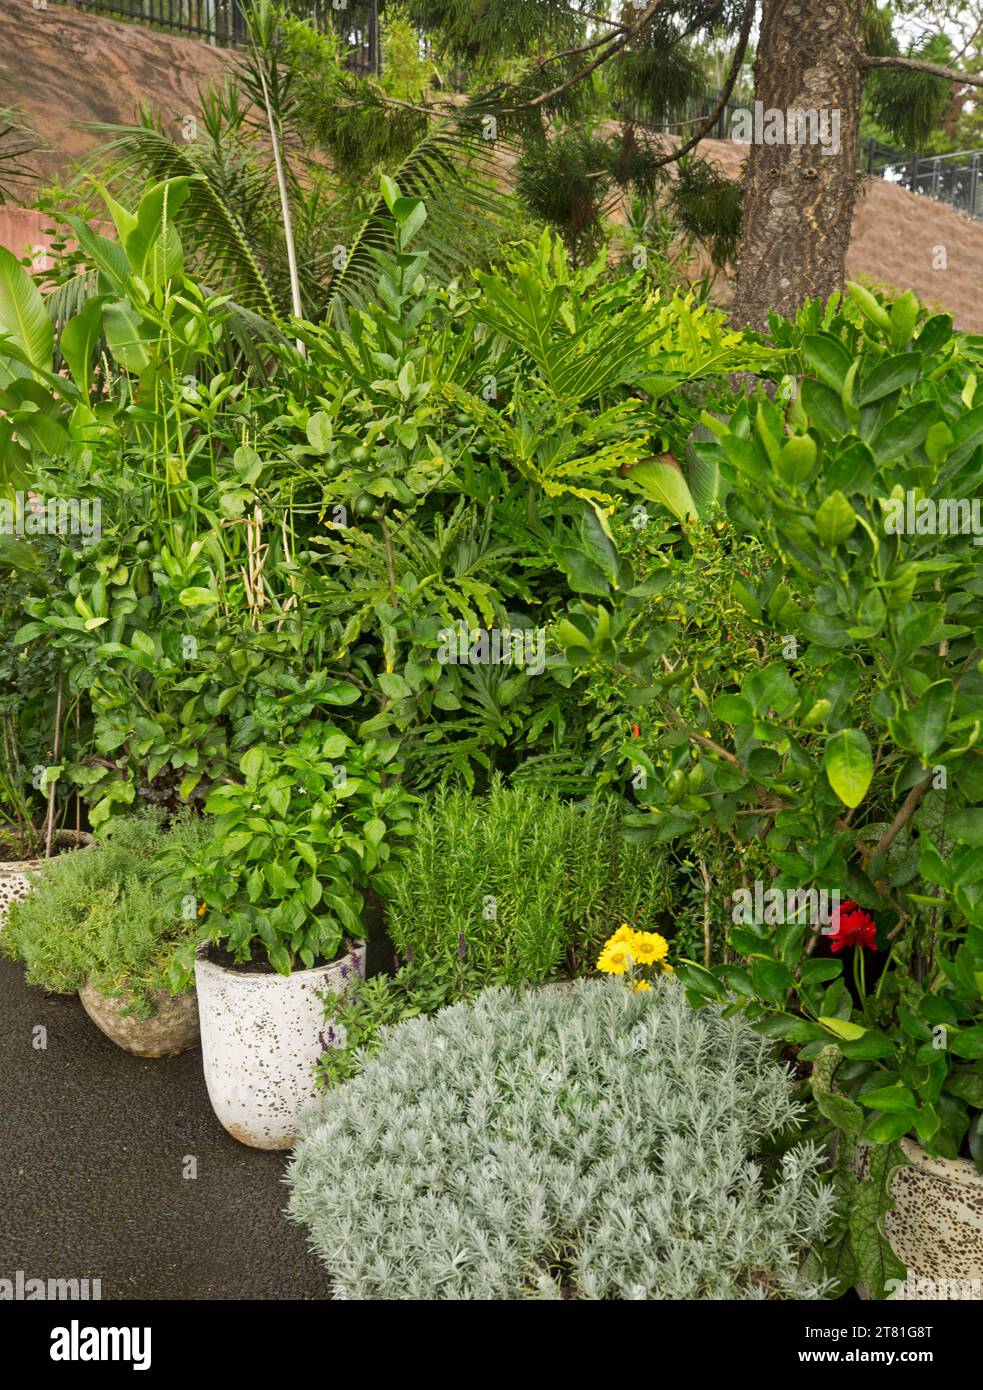 Sammlung von Pflanzen, einschließlich kulinarischer Kräuter, mit dichtem Laub in kräftigen Grün- und Grautönen, das in Behältern im Garten wächst Stockfoto